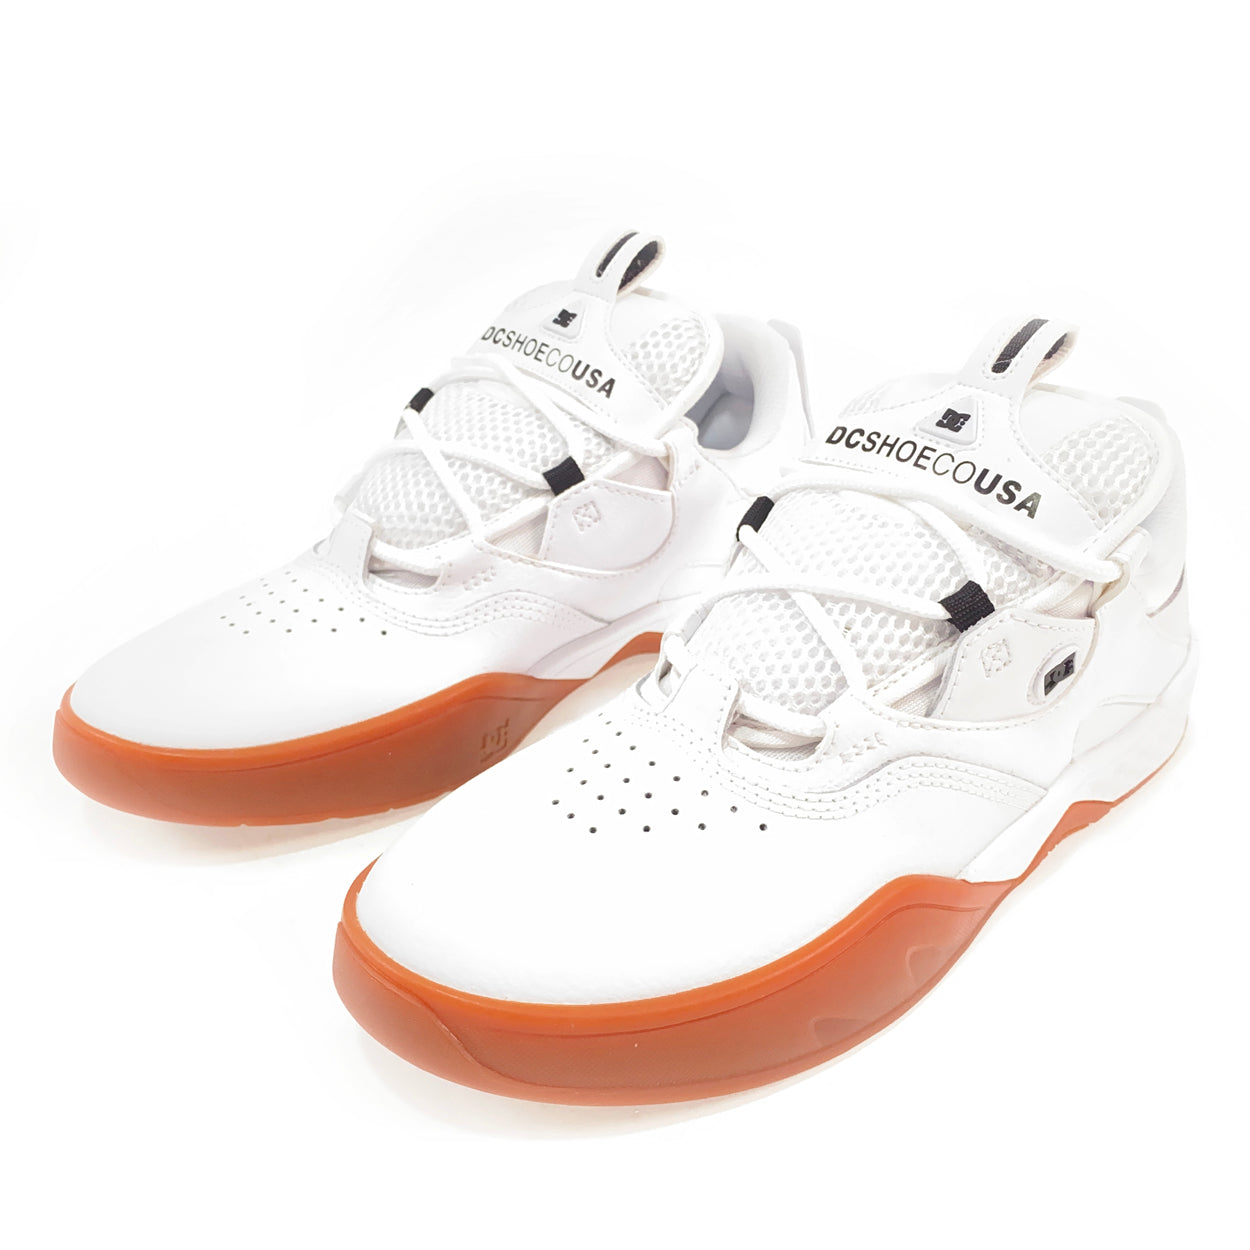 DC Shoes Kalis Skate Shoes - White / Gum - Prime Delux Store